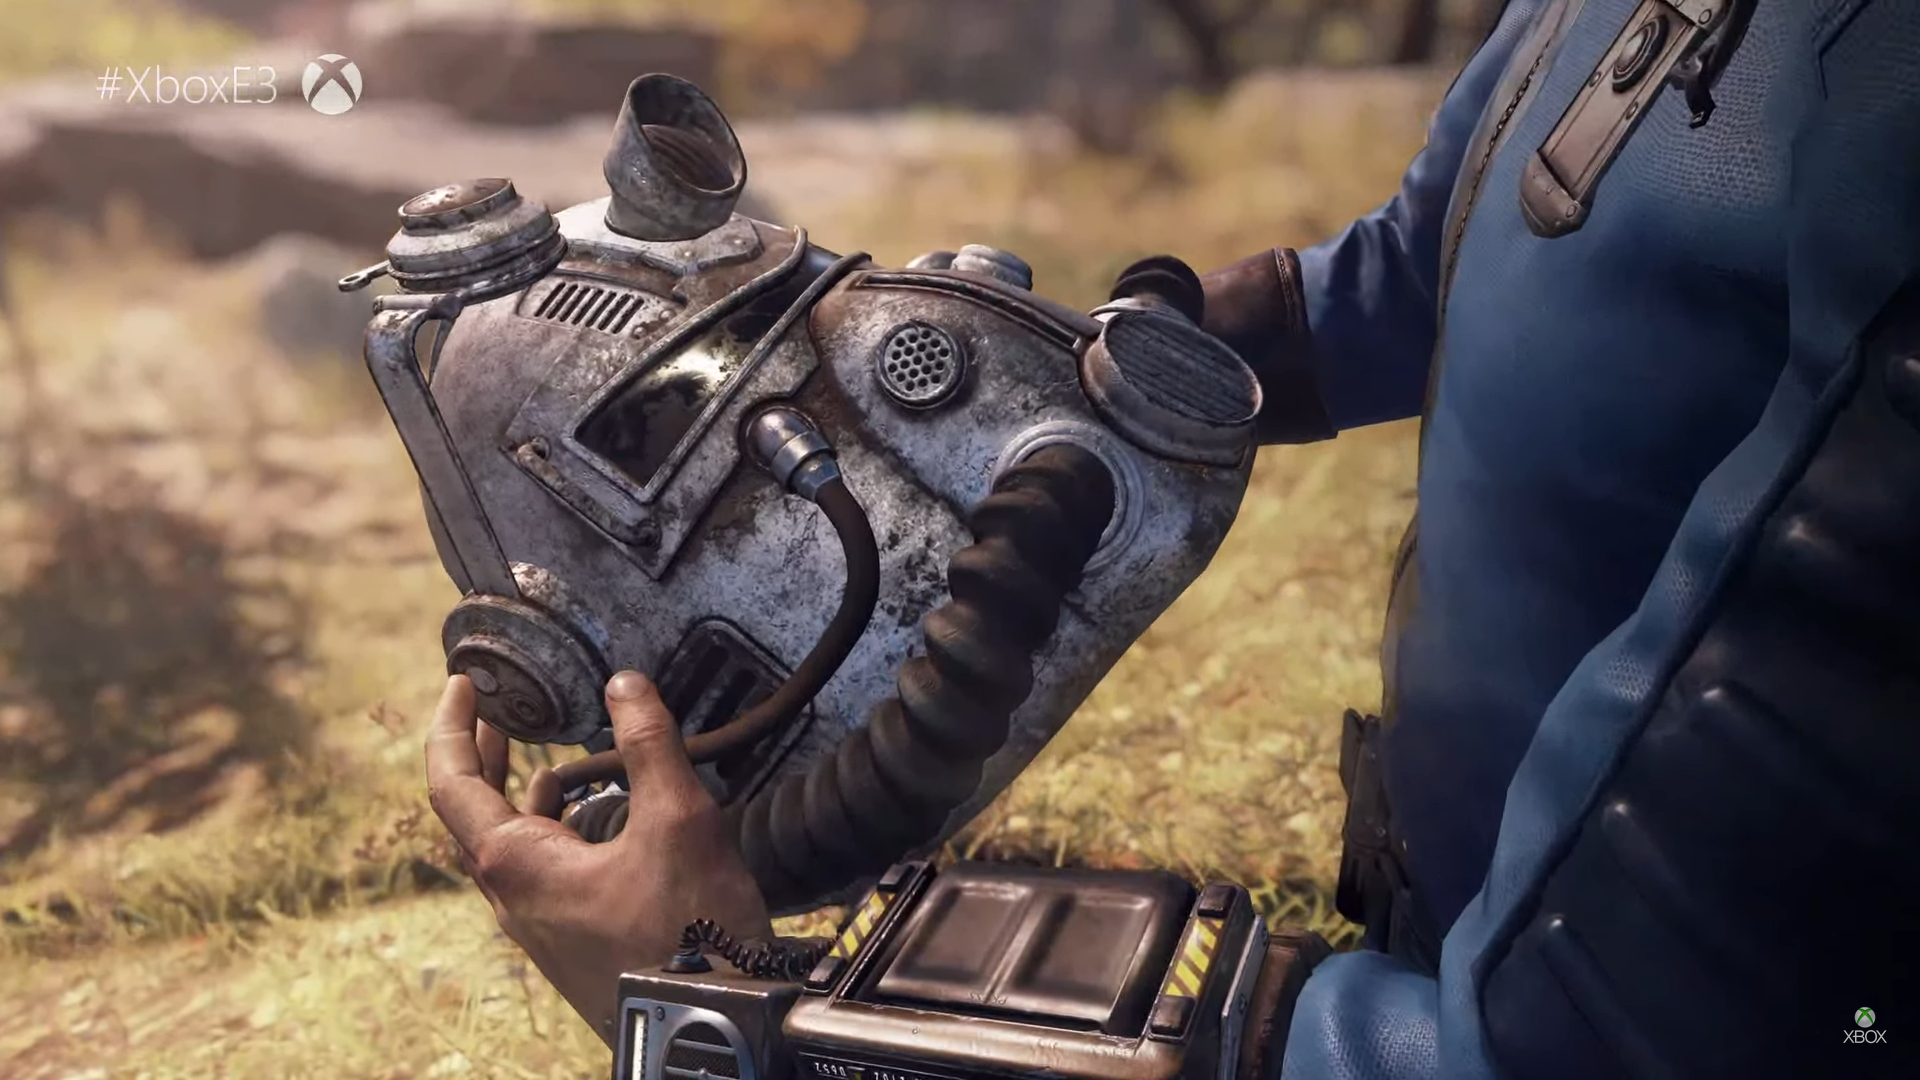 El esperado Fallout 76 ofrecerá 150 horas de juego, según Bethesda